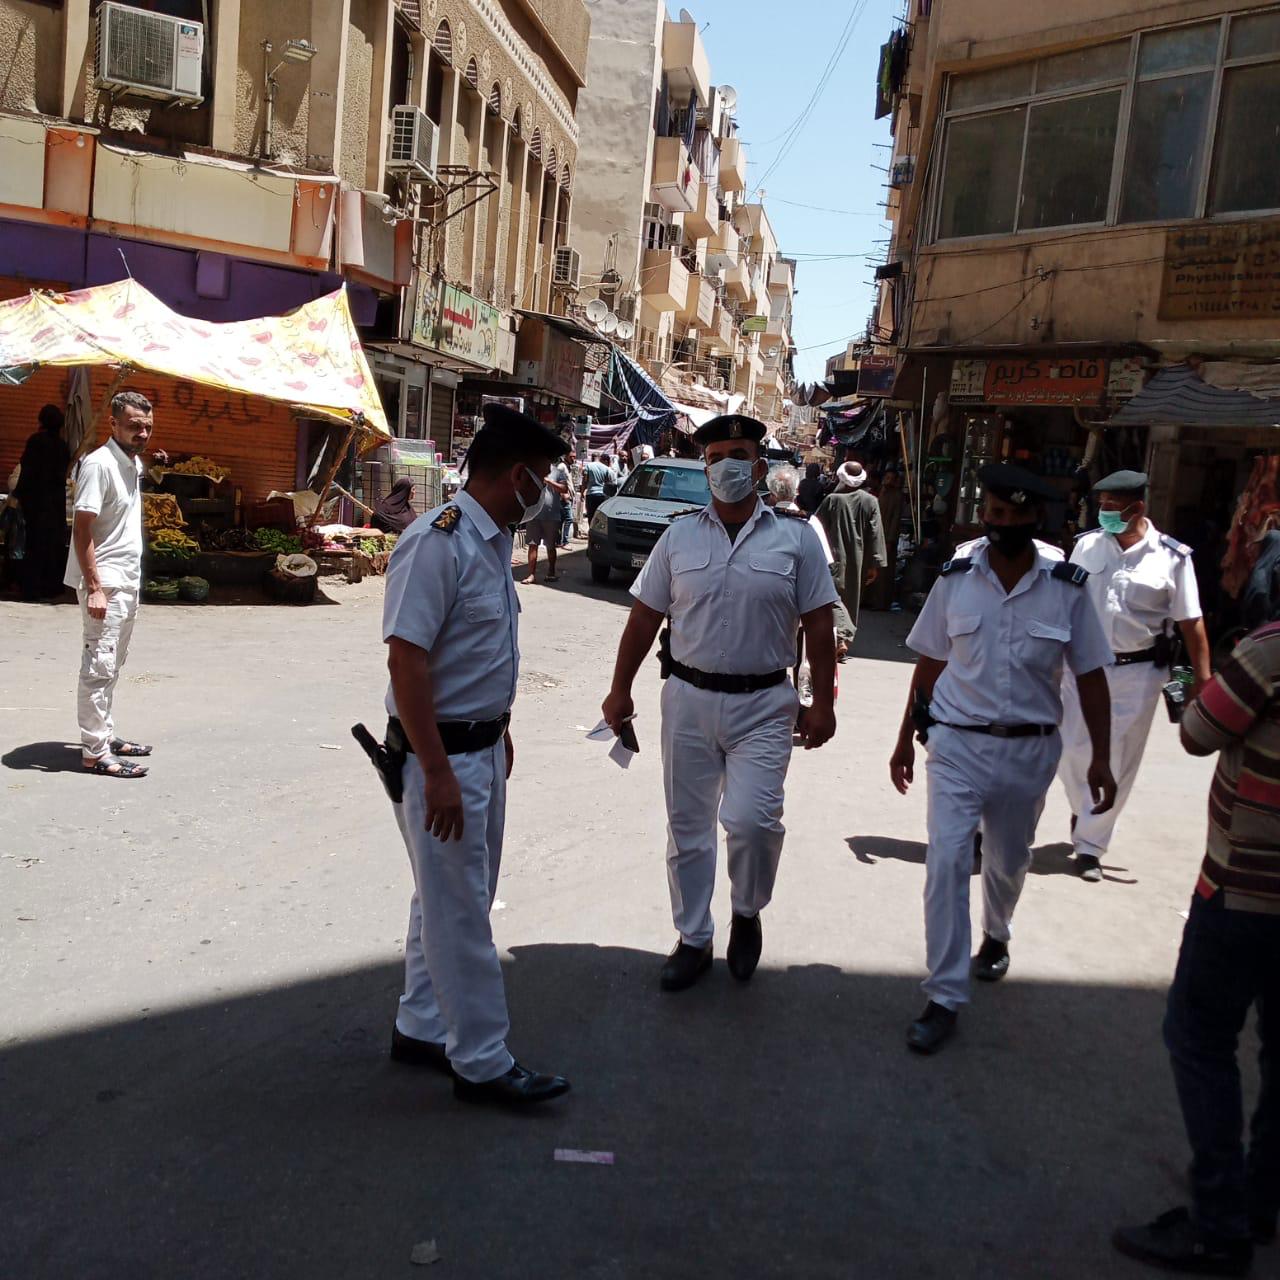 شرطة مرافق الأقصر تحرر 120 محضرا فى حملات بشوارع والمقاهي 2